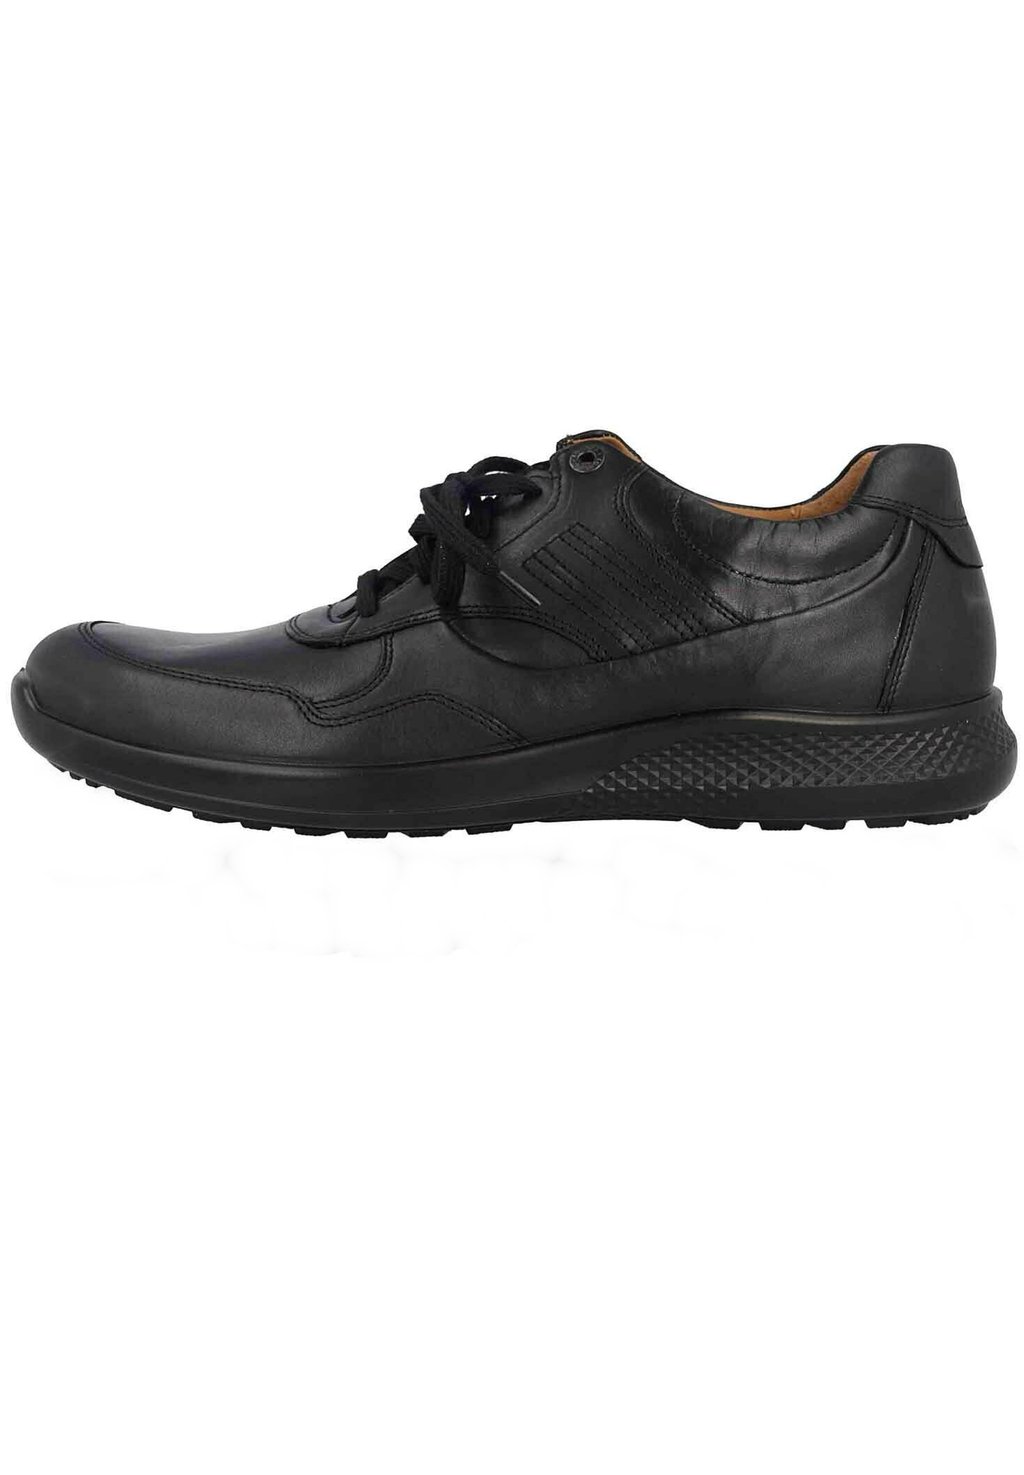 Спортивные туфли на шнуровке 322406 15 000 Jomos, цвет black